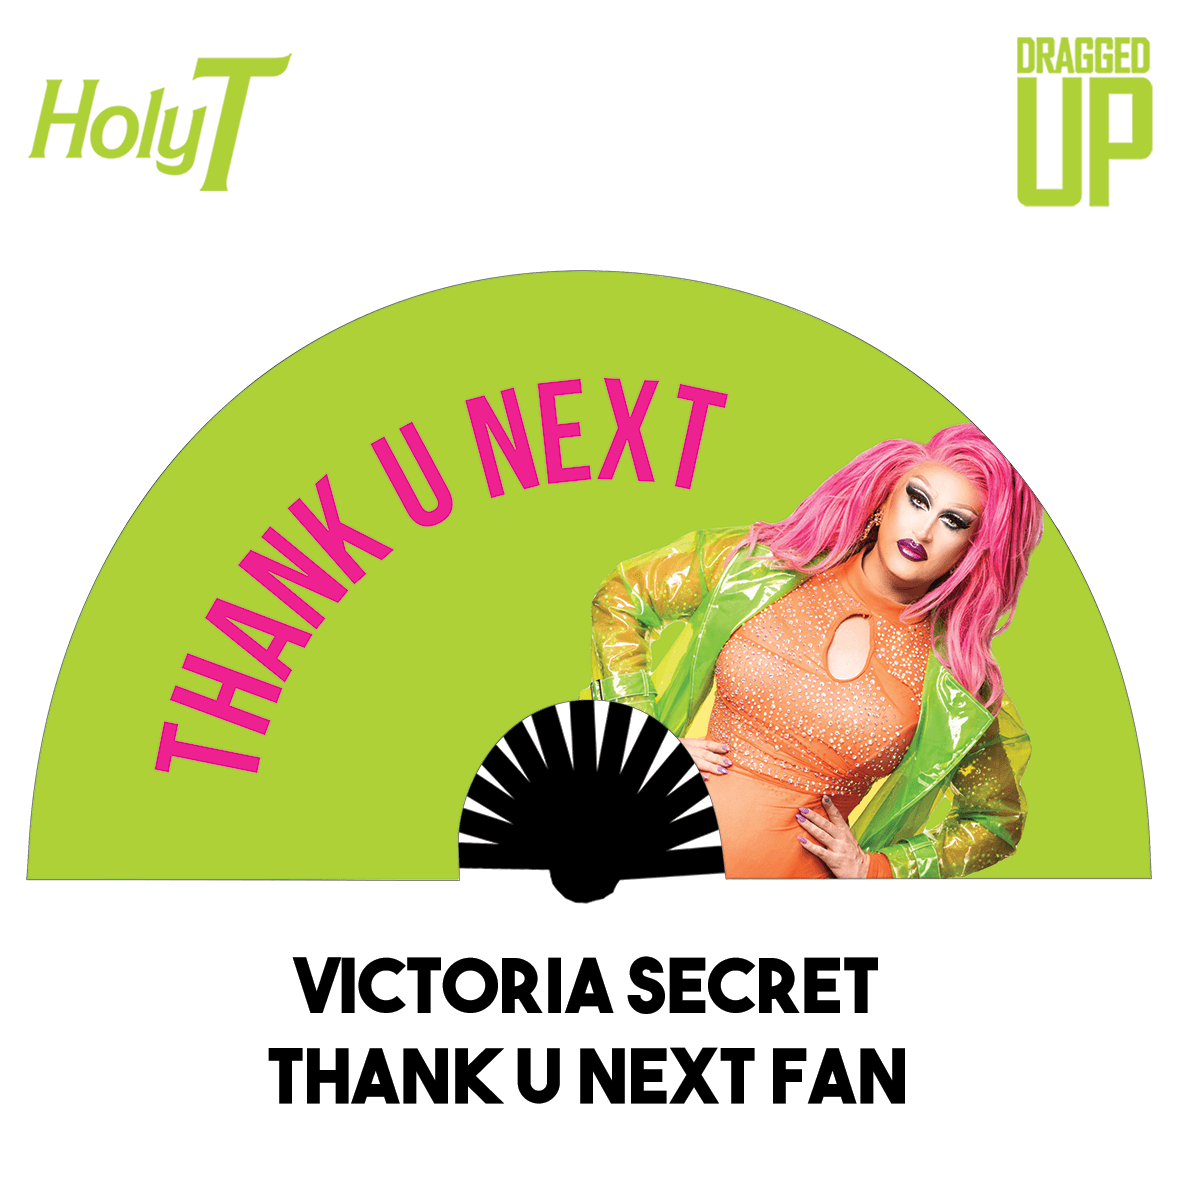 Victoria Secret Thank You Next Fan (Large)